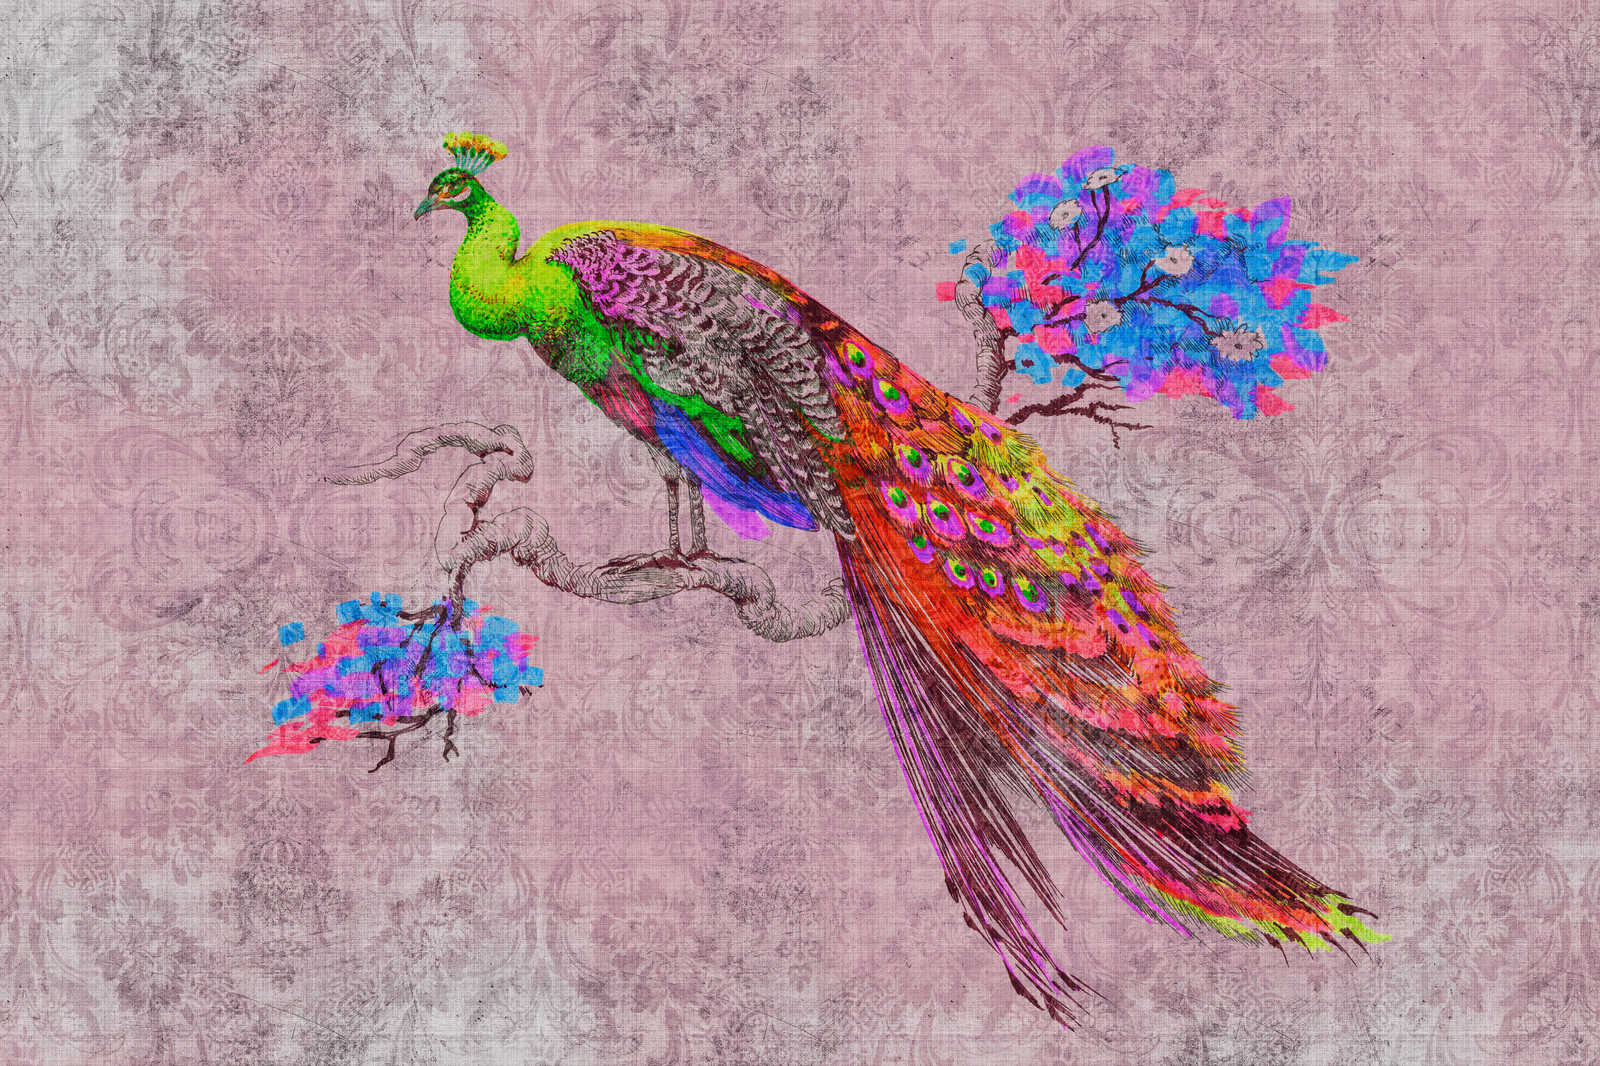             Peacock 2 - Tableau toile avec motif paon & ornement en structure lin naturel - 0,90 m x 0,60 m
        